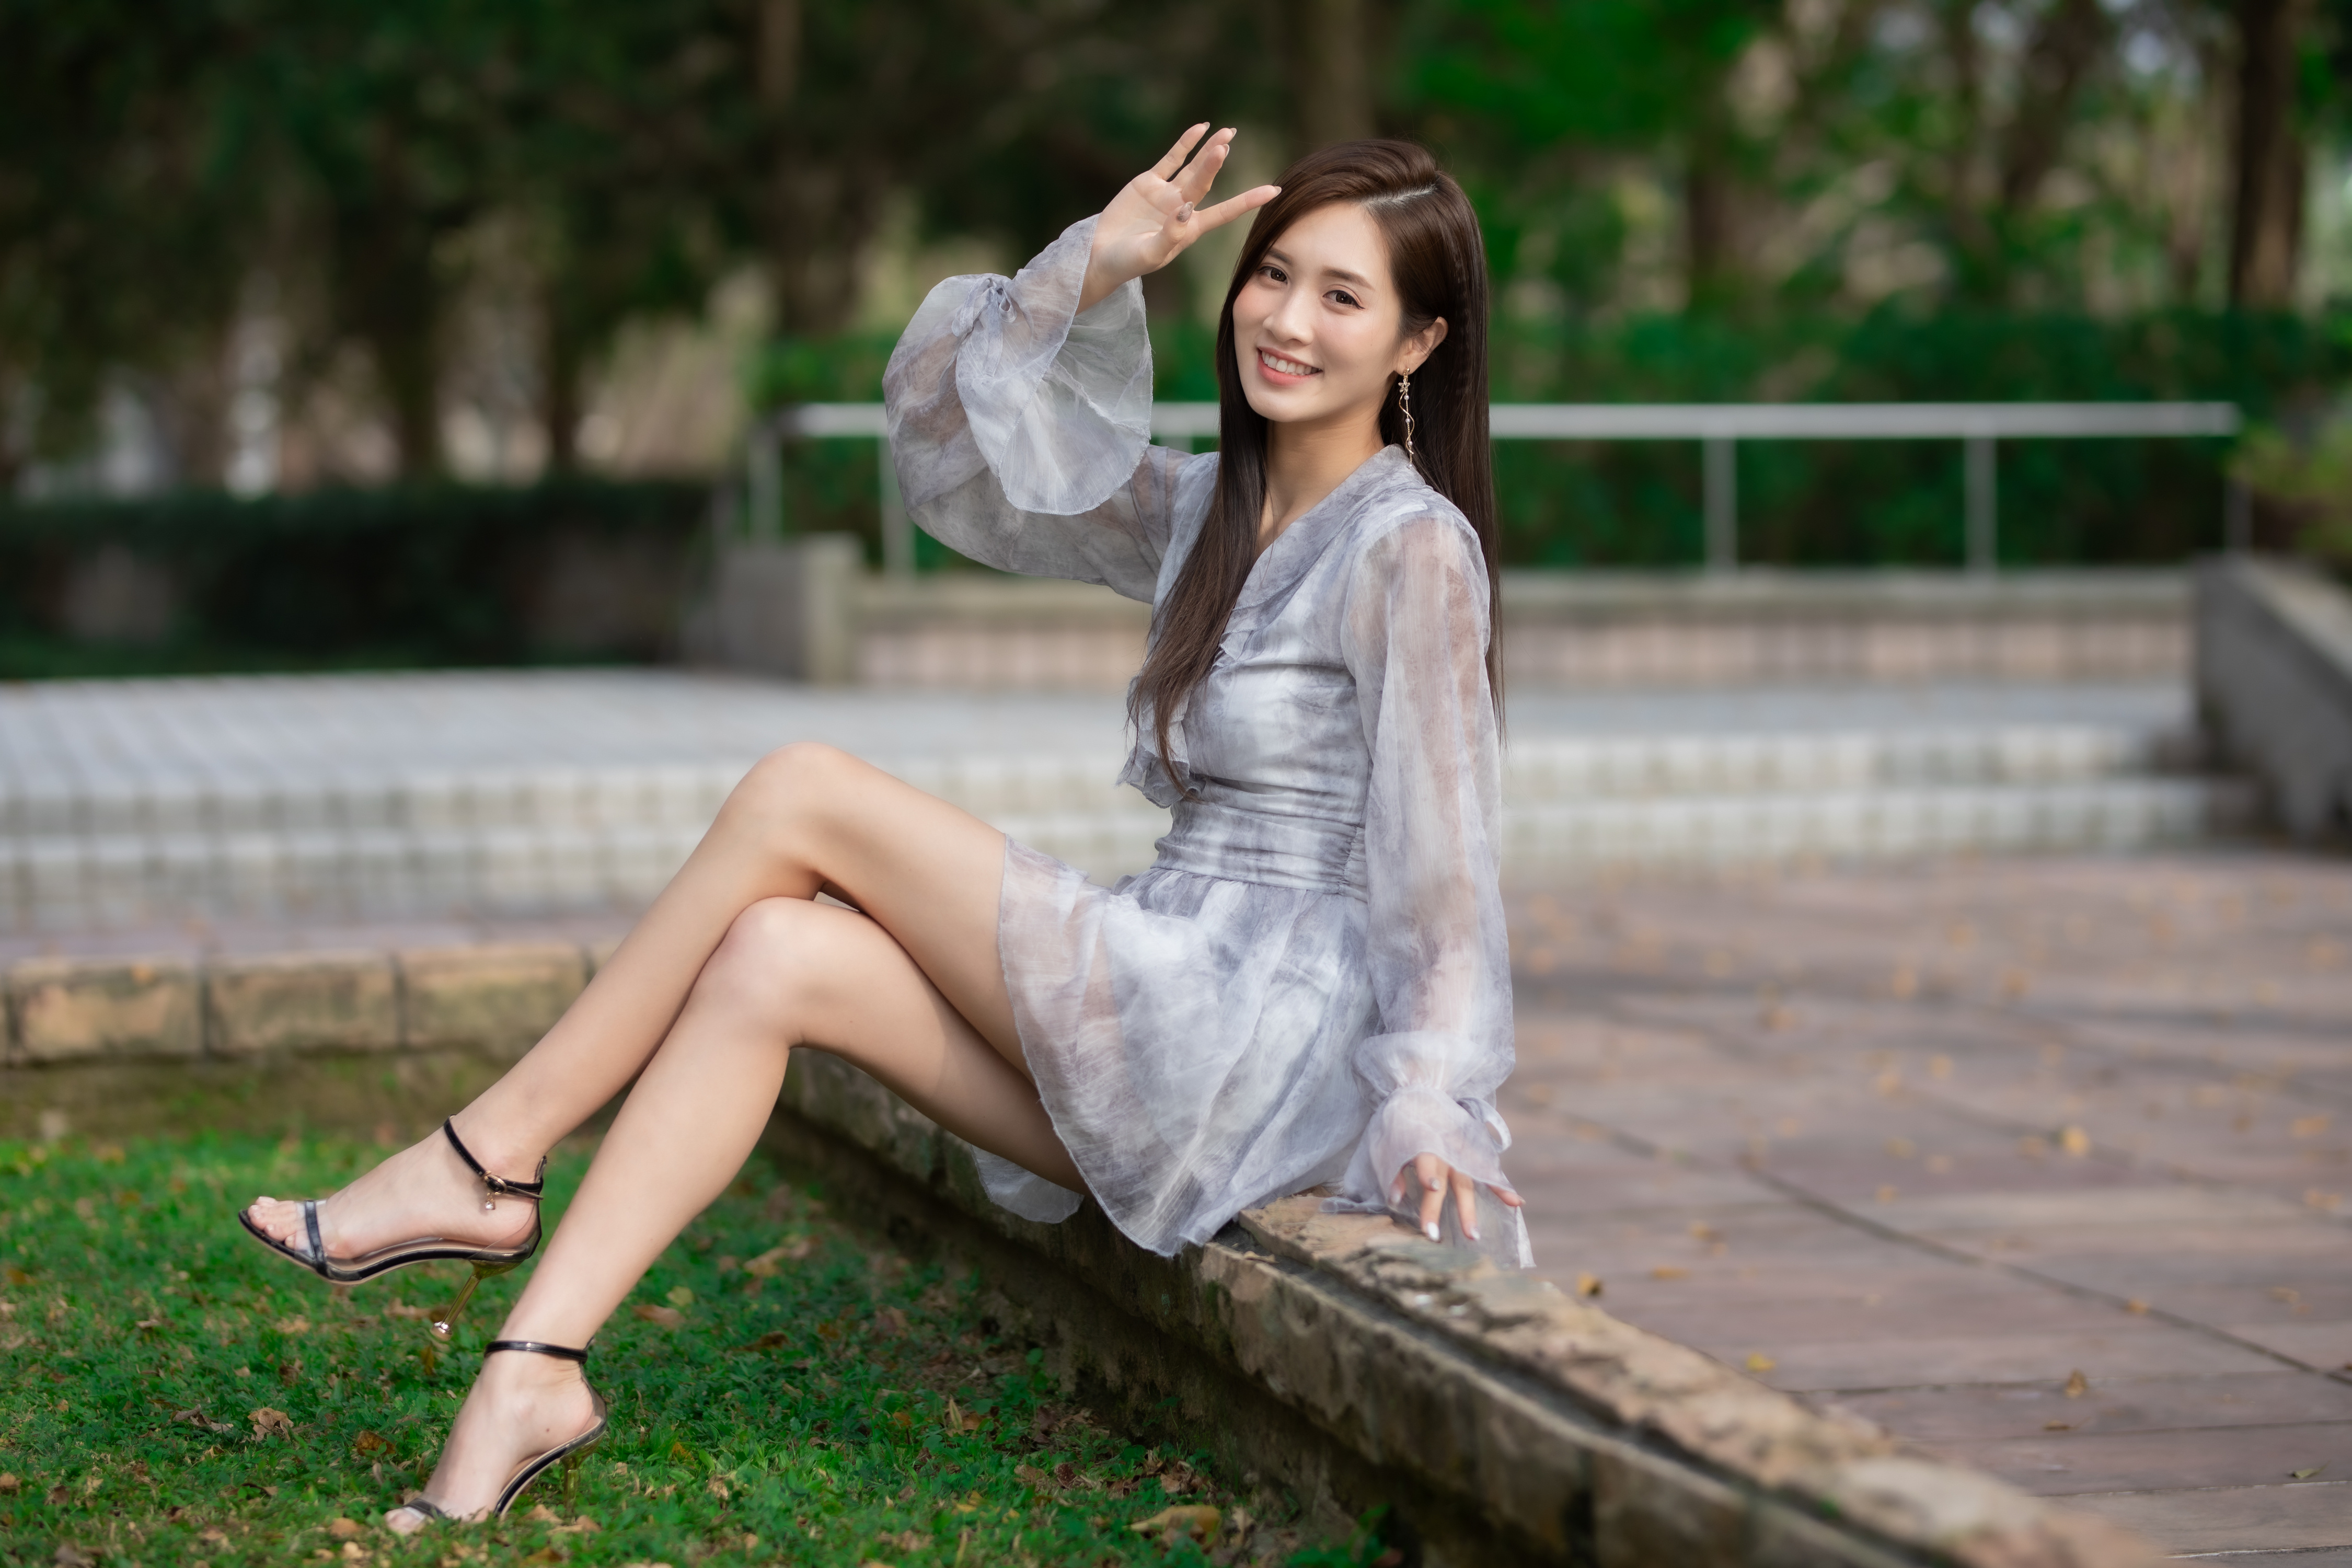 Asian Model Women Long Hair Dark Hair Sitting Barefoot Sandal 4500x3000